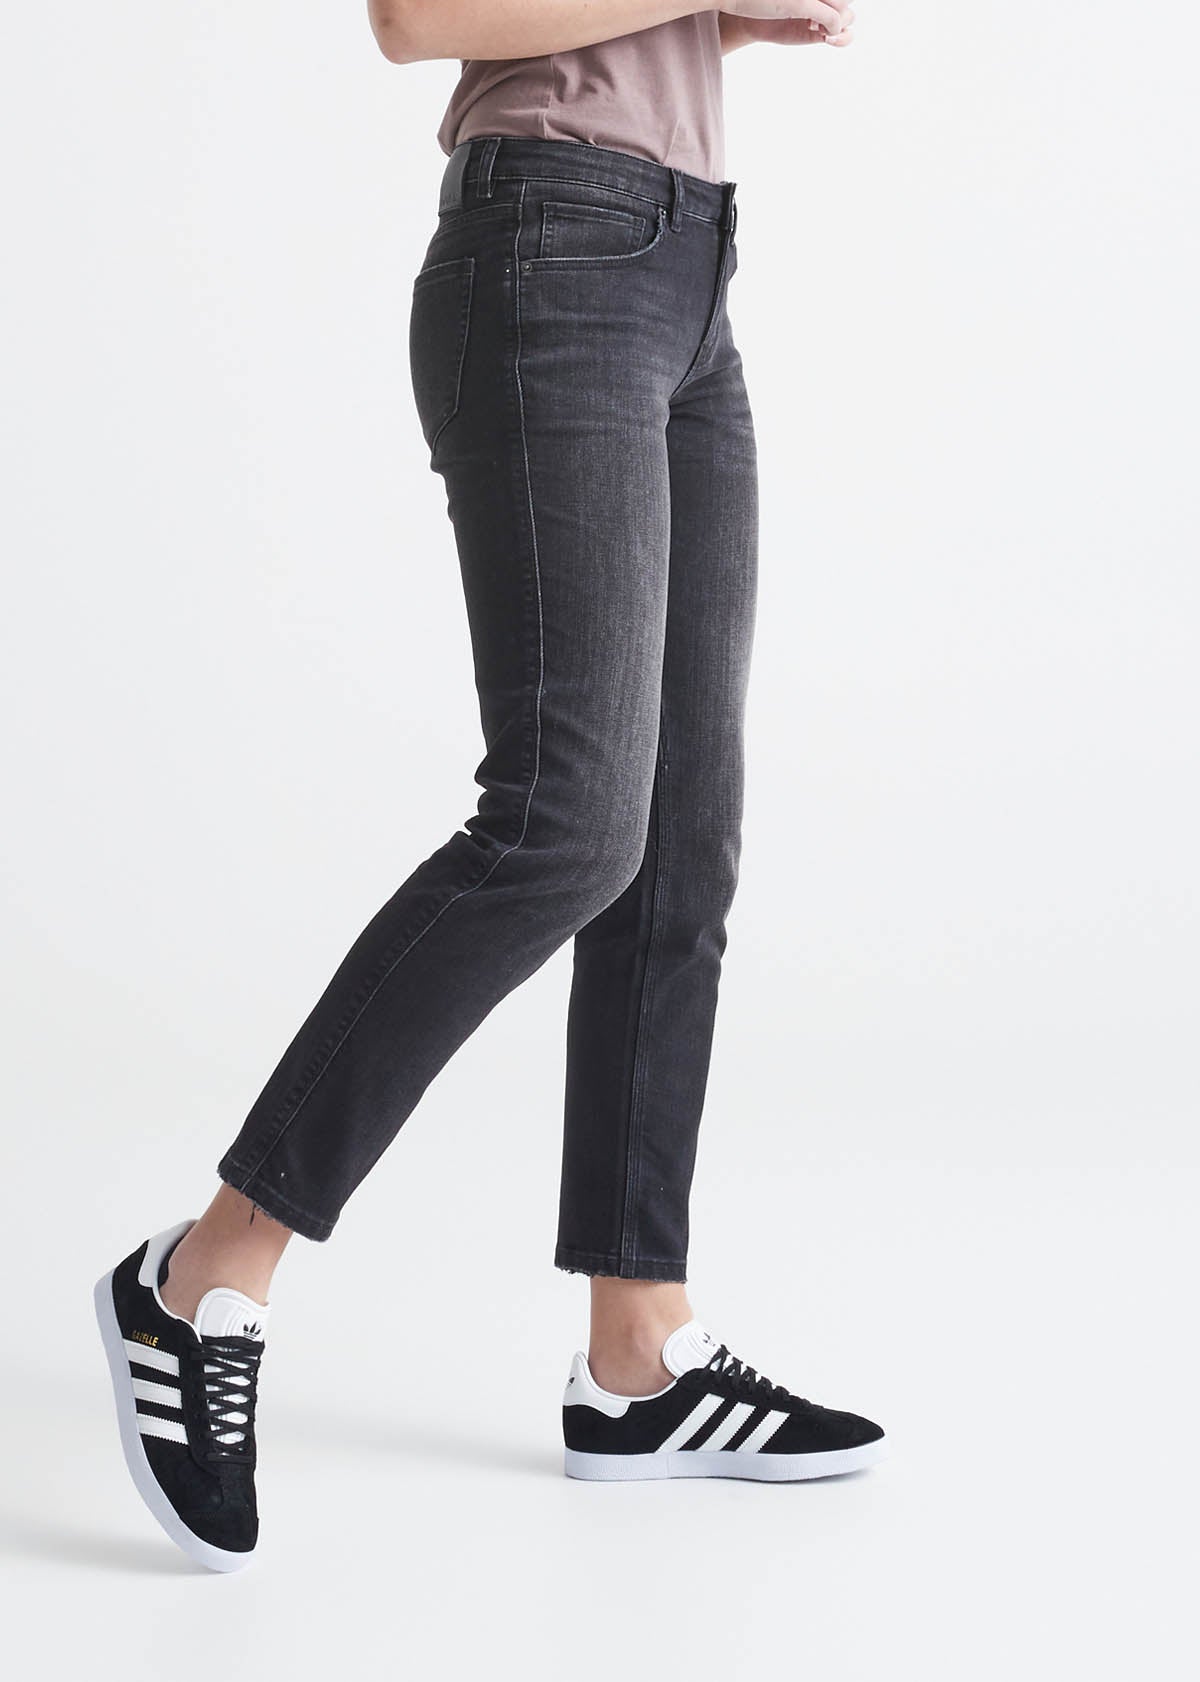 Women's Side Elastic Jean (Petite), Women's Jeans